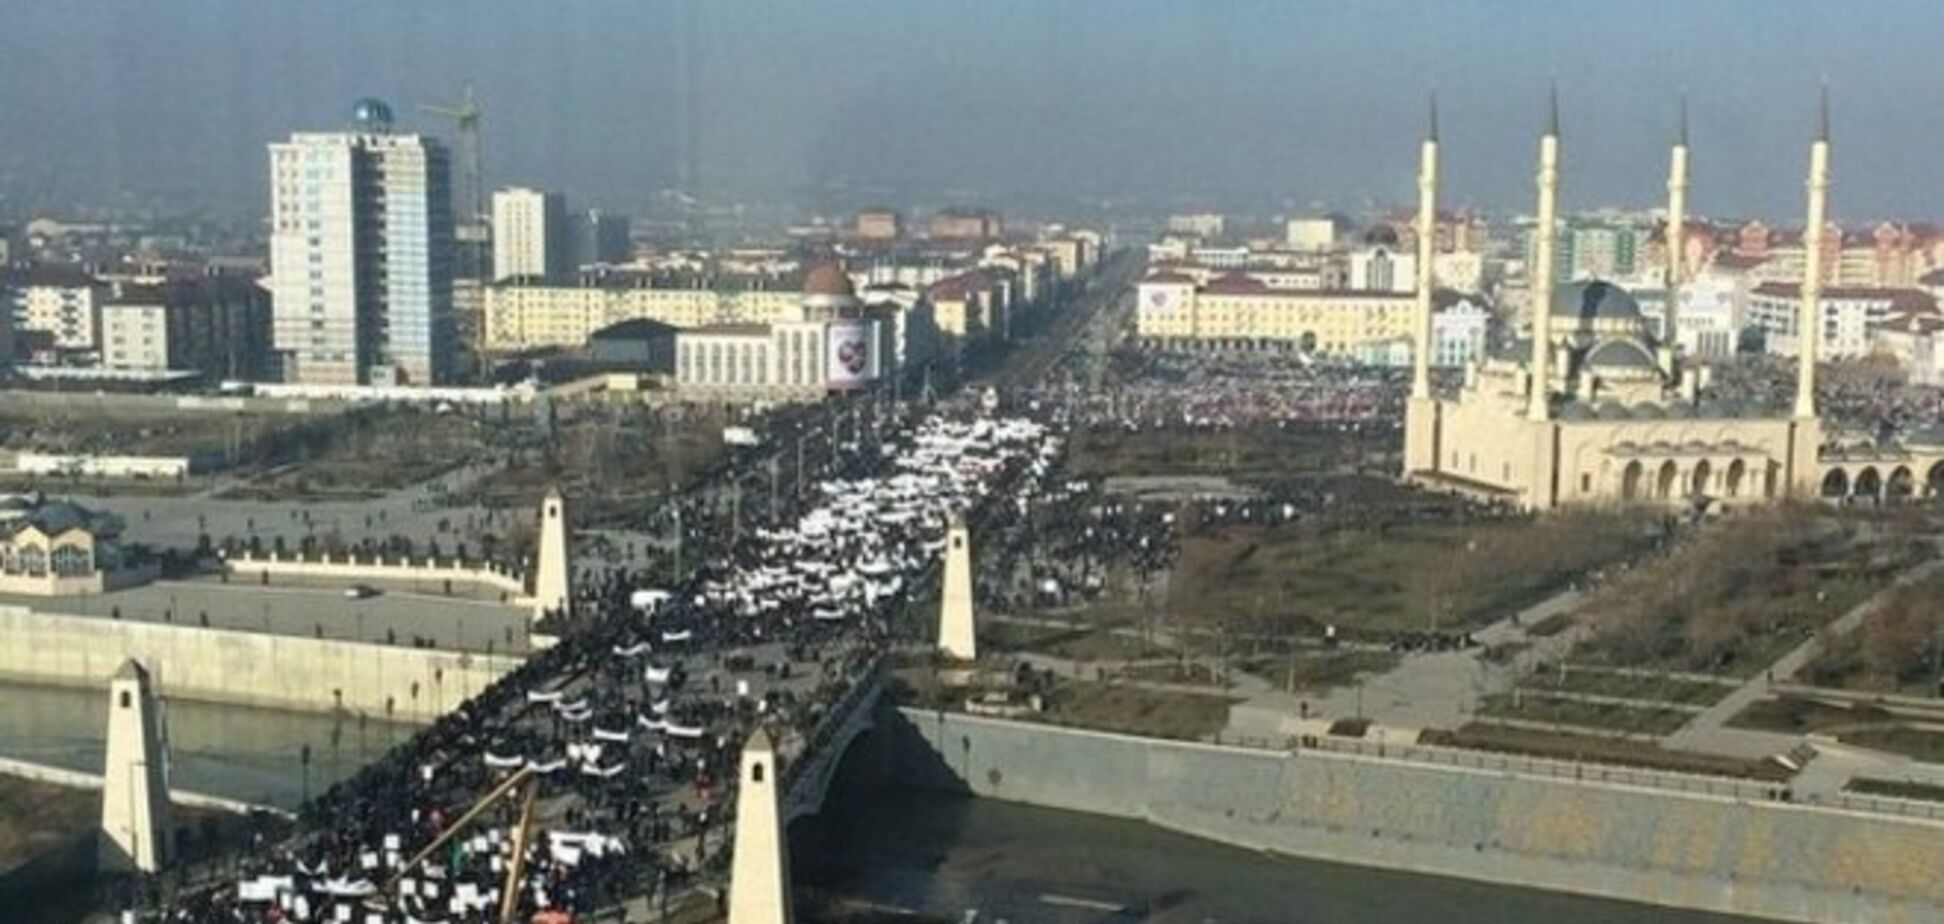 На 'антикарікатурний' мітинг в Грозний звезли понад мільйон людей: опубліковано фото